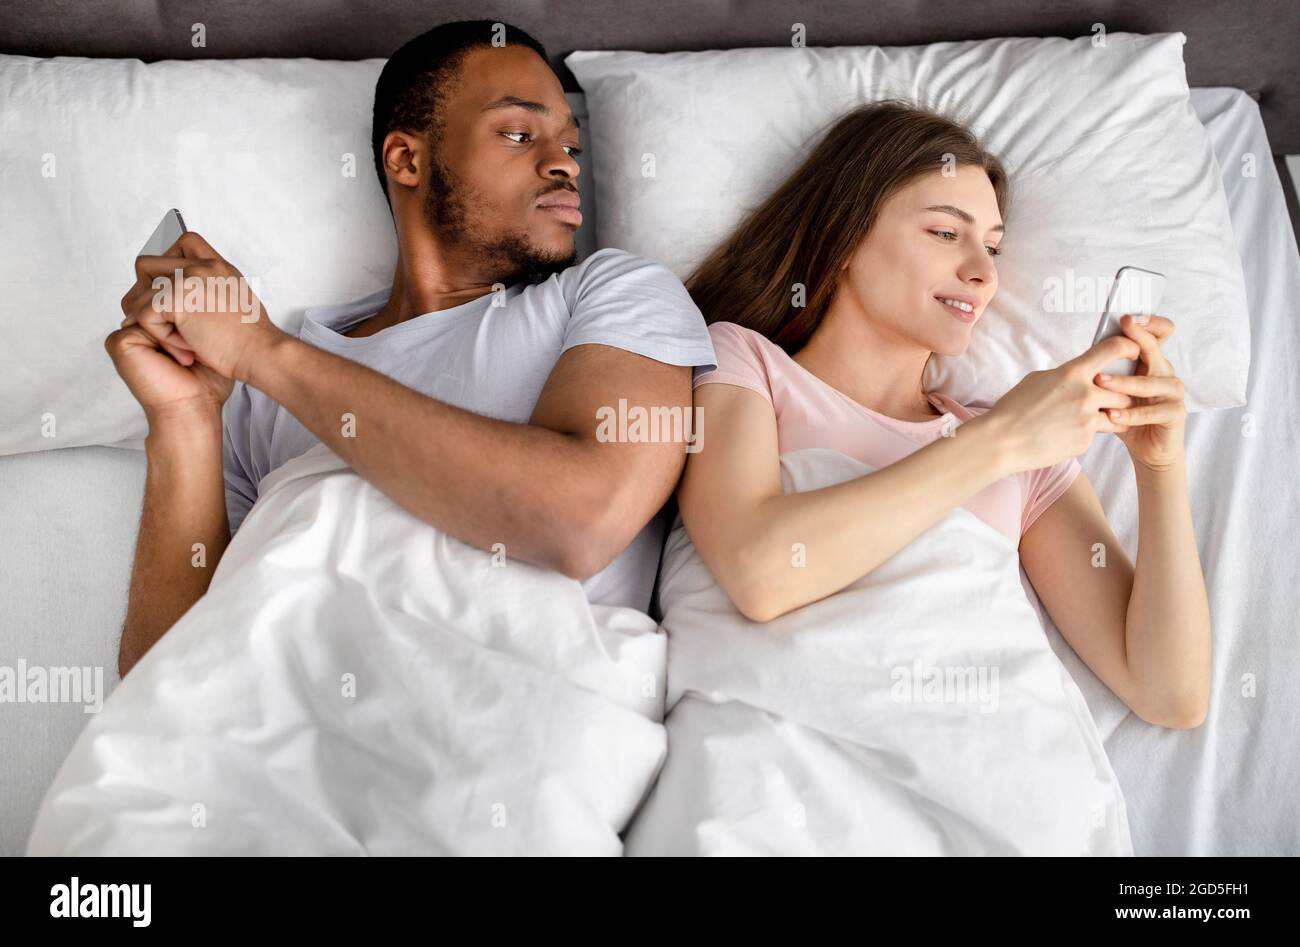 Jeune couple interracial allongé dans le lit coincé dans les smartphones,  jouer à des jeux en ligne, parcourir les médias sociaux, vue de dessus.  Problèmes de relation, addic gadget Photo Stock -